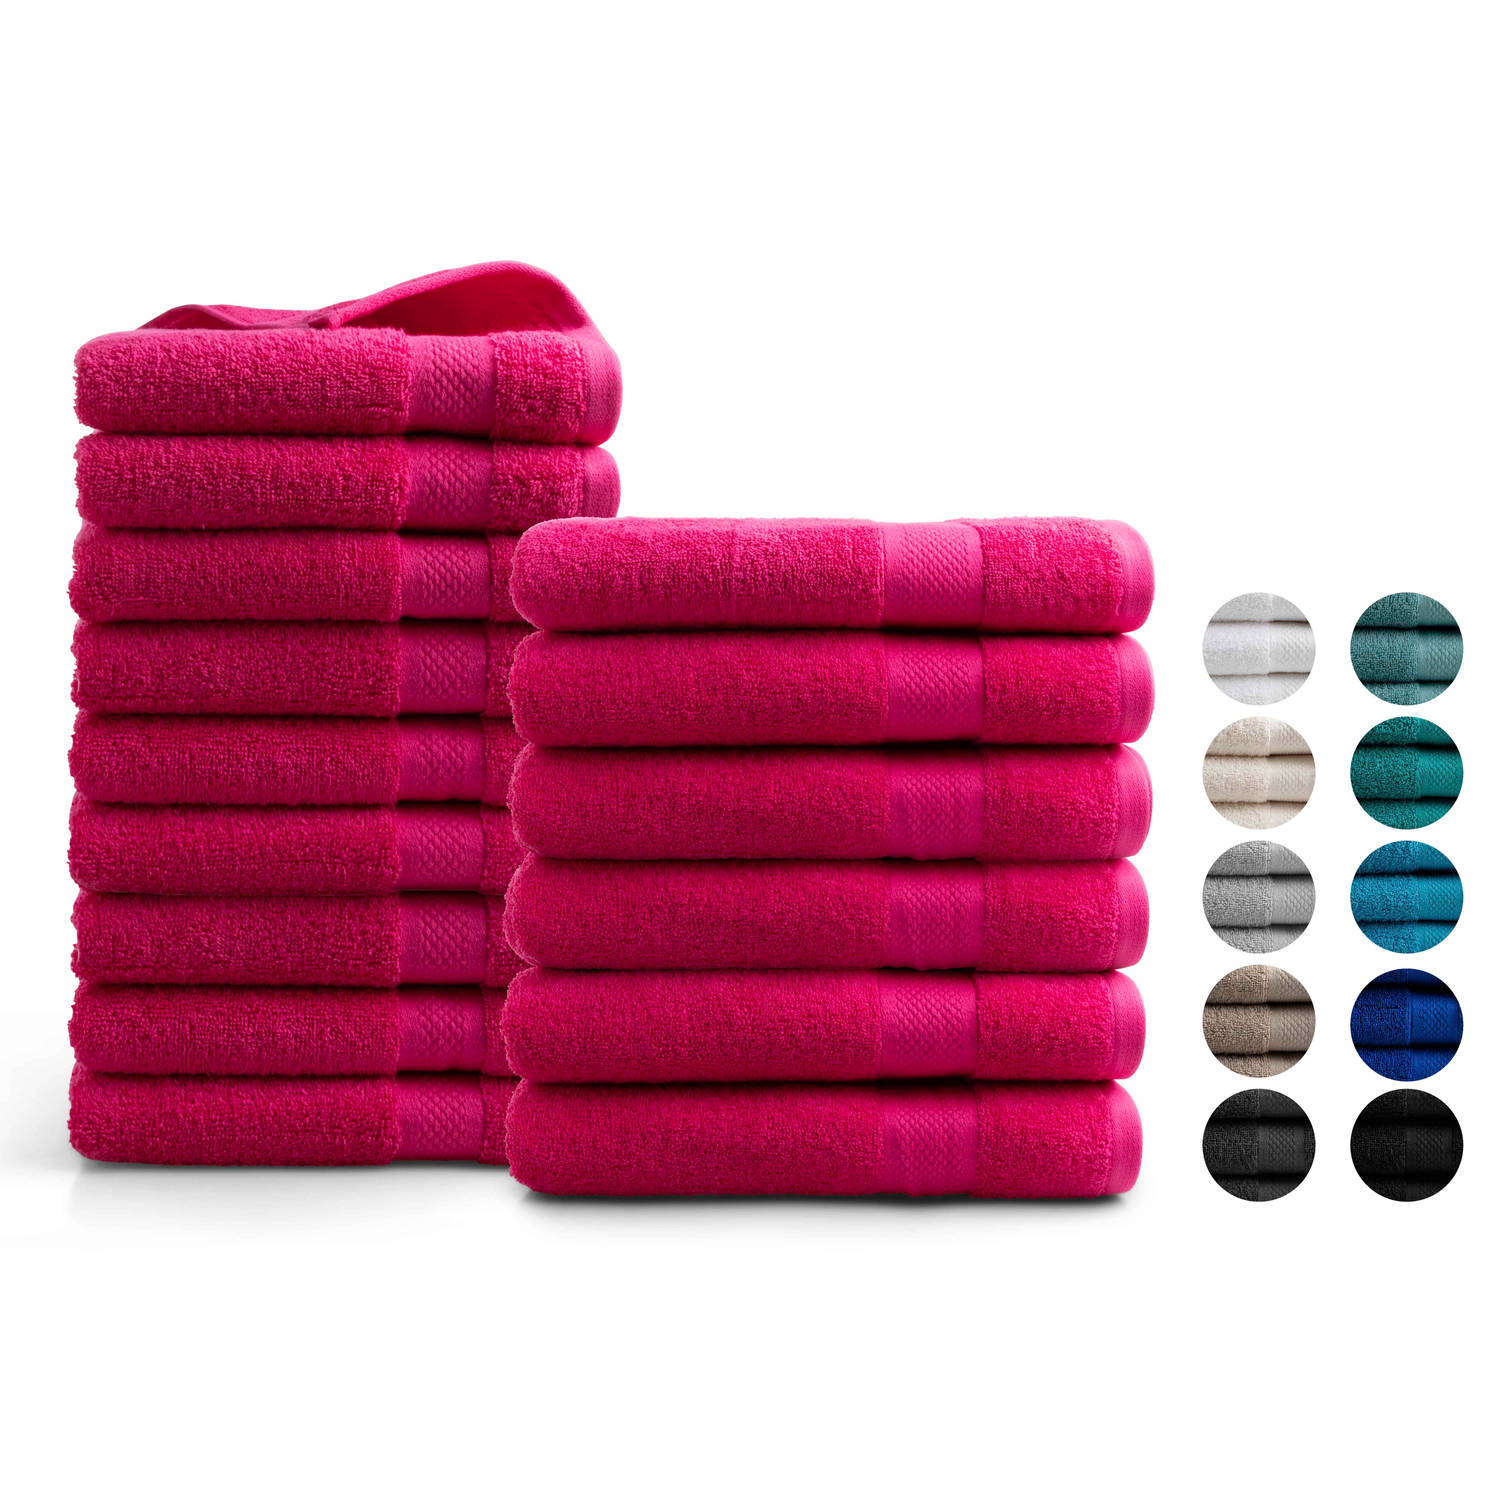 Handdoeken 15 delig set - Hotel Collectie - 100% katoen - roze